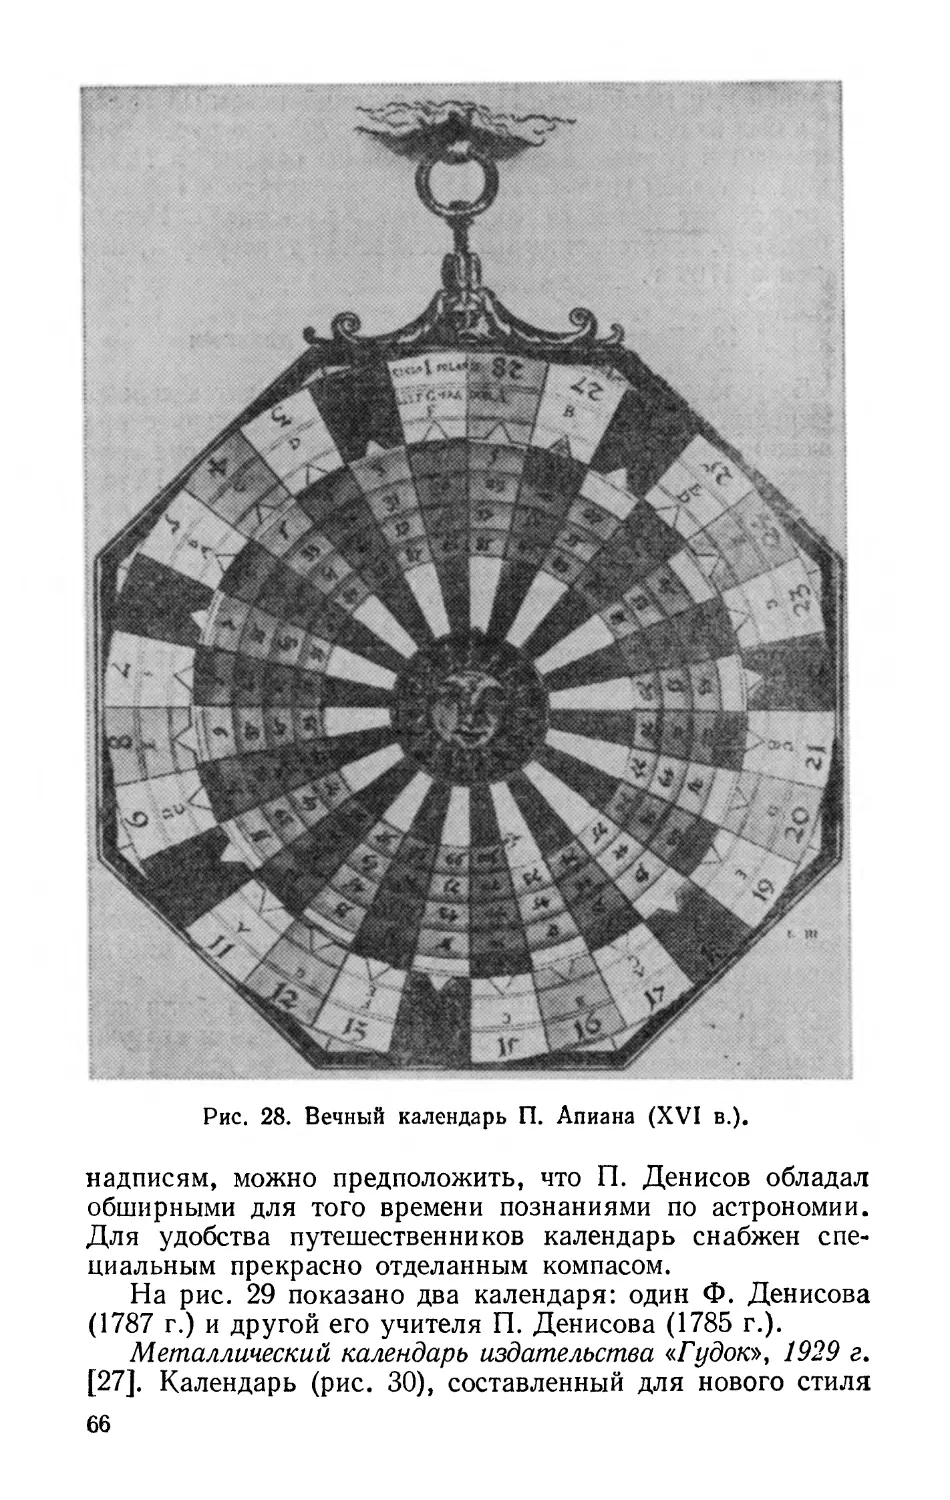 Металлический календарь издательства «Гудок», 1929 г.